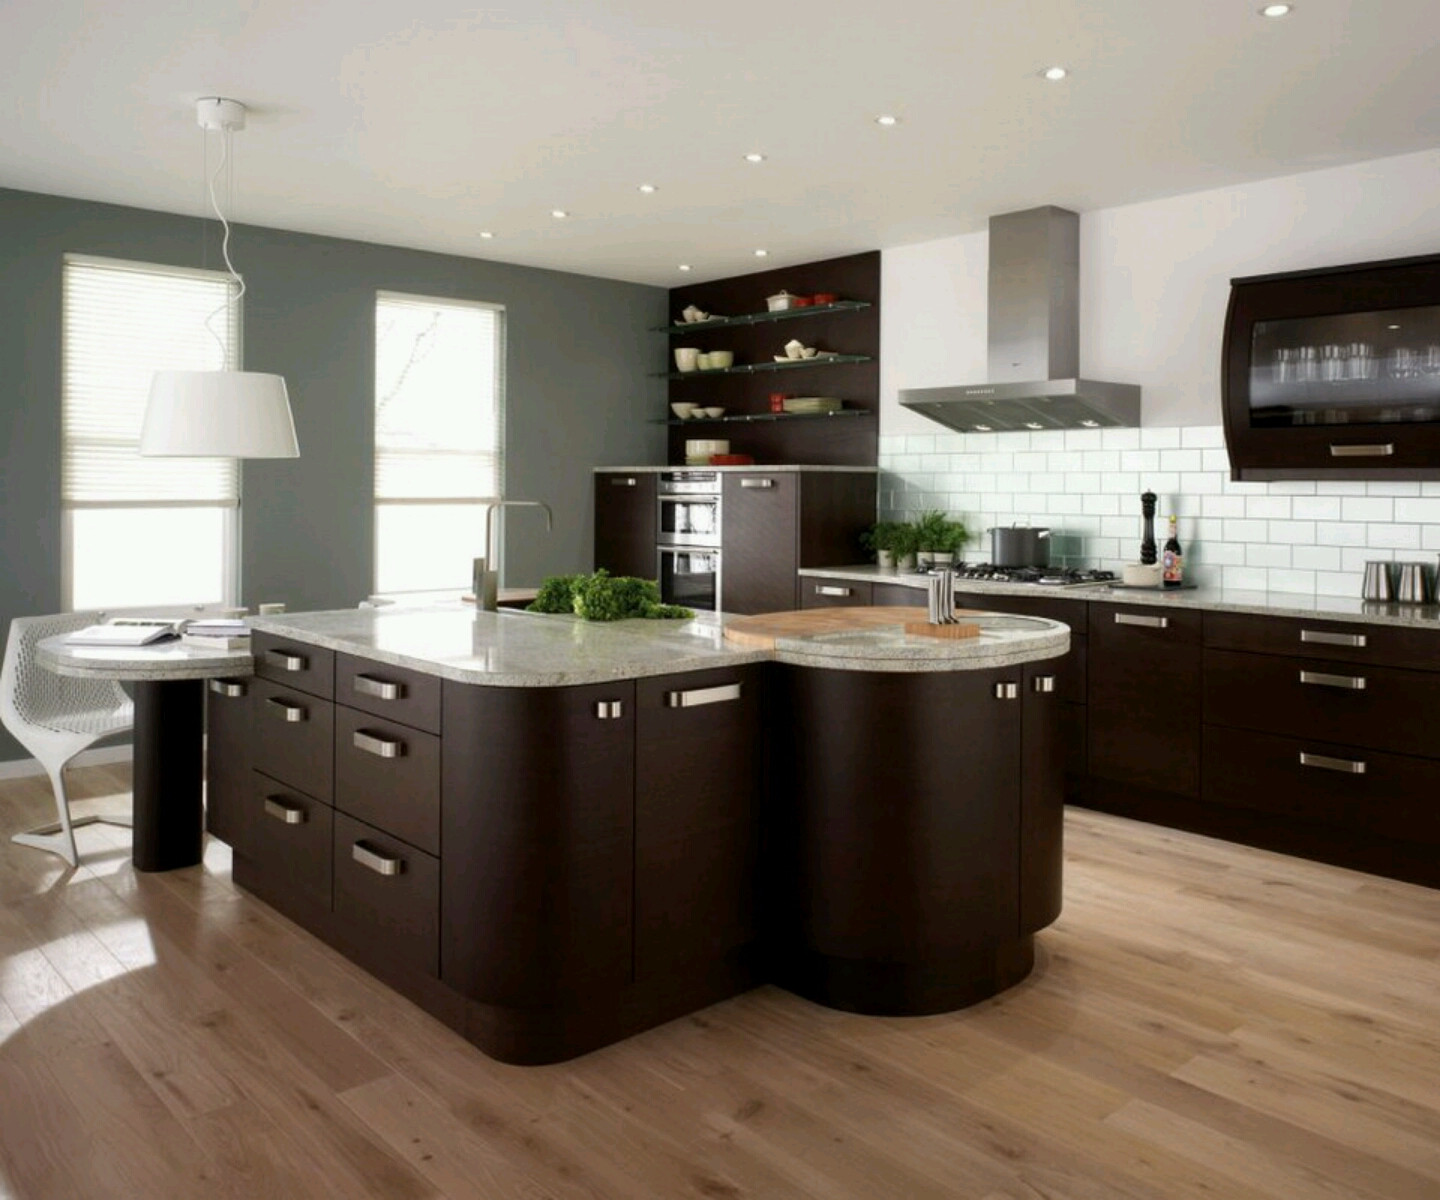 Kitchen Cabinets Design Ideas
 New home designs latest Modern home kitchen cabinet